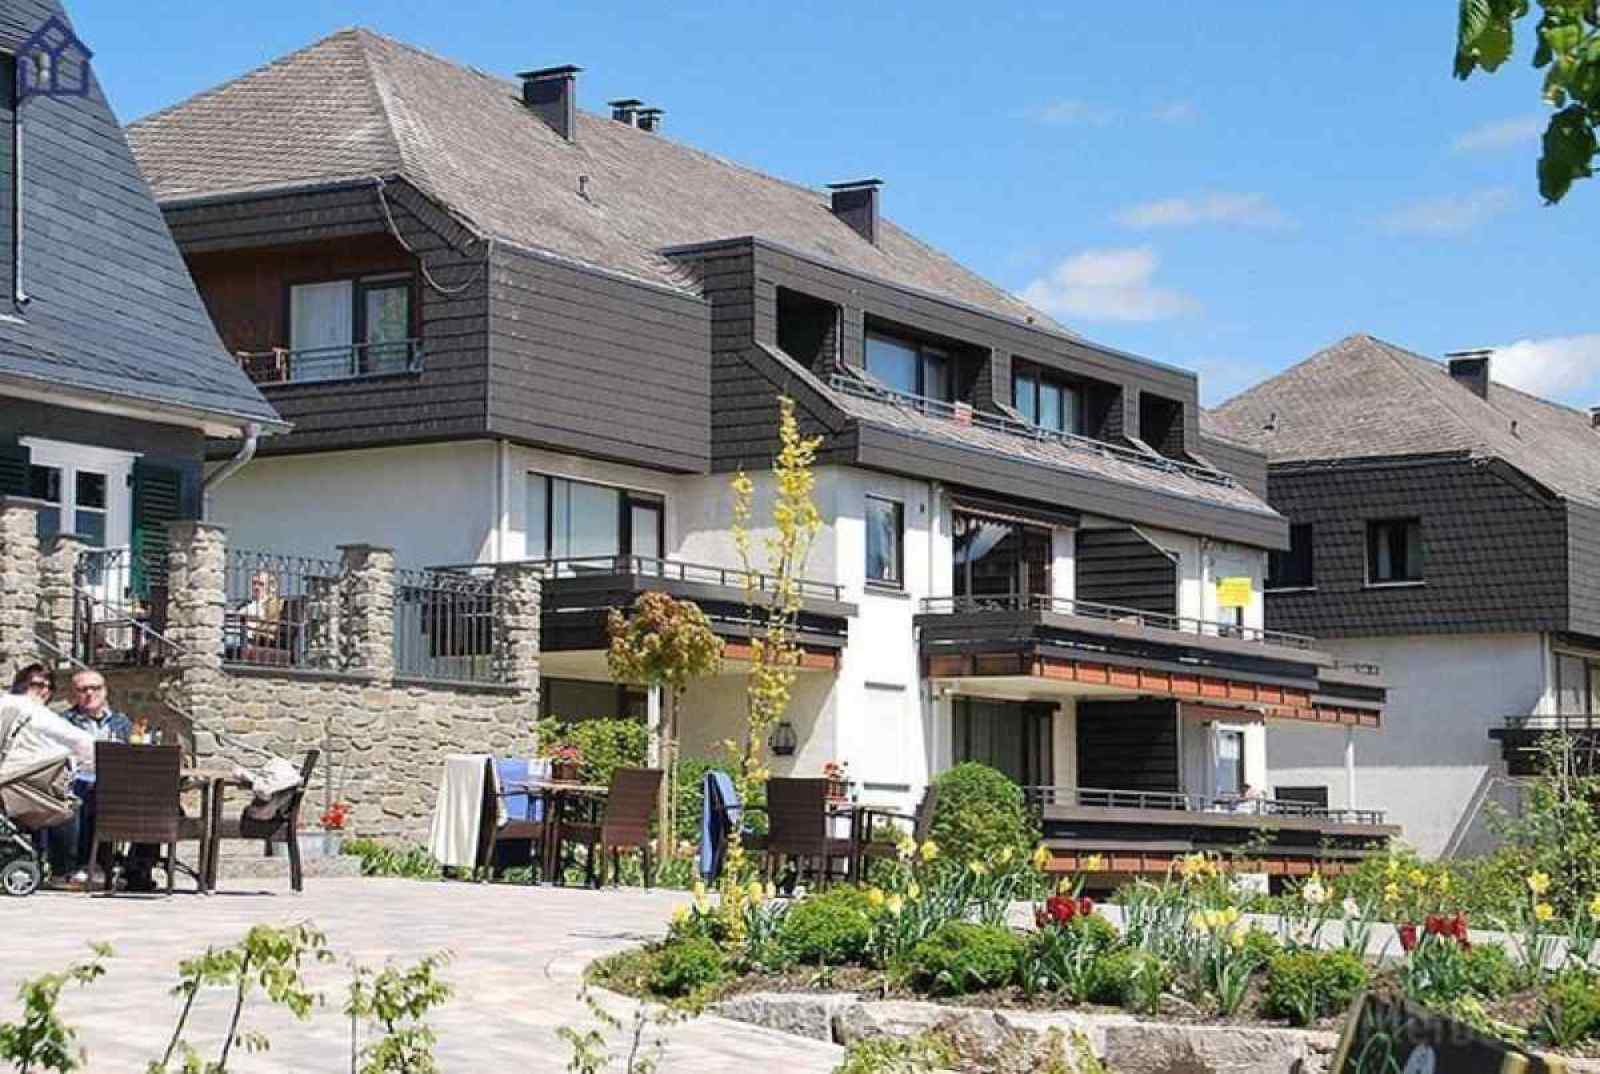 Mooi 4 persoons vakantieappartement in Winterberg, direct aan het skigebied. - Duitsland - Europa - Winterberg